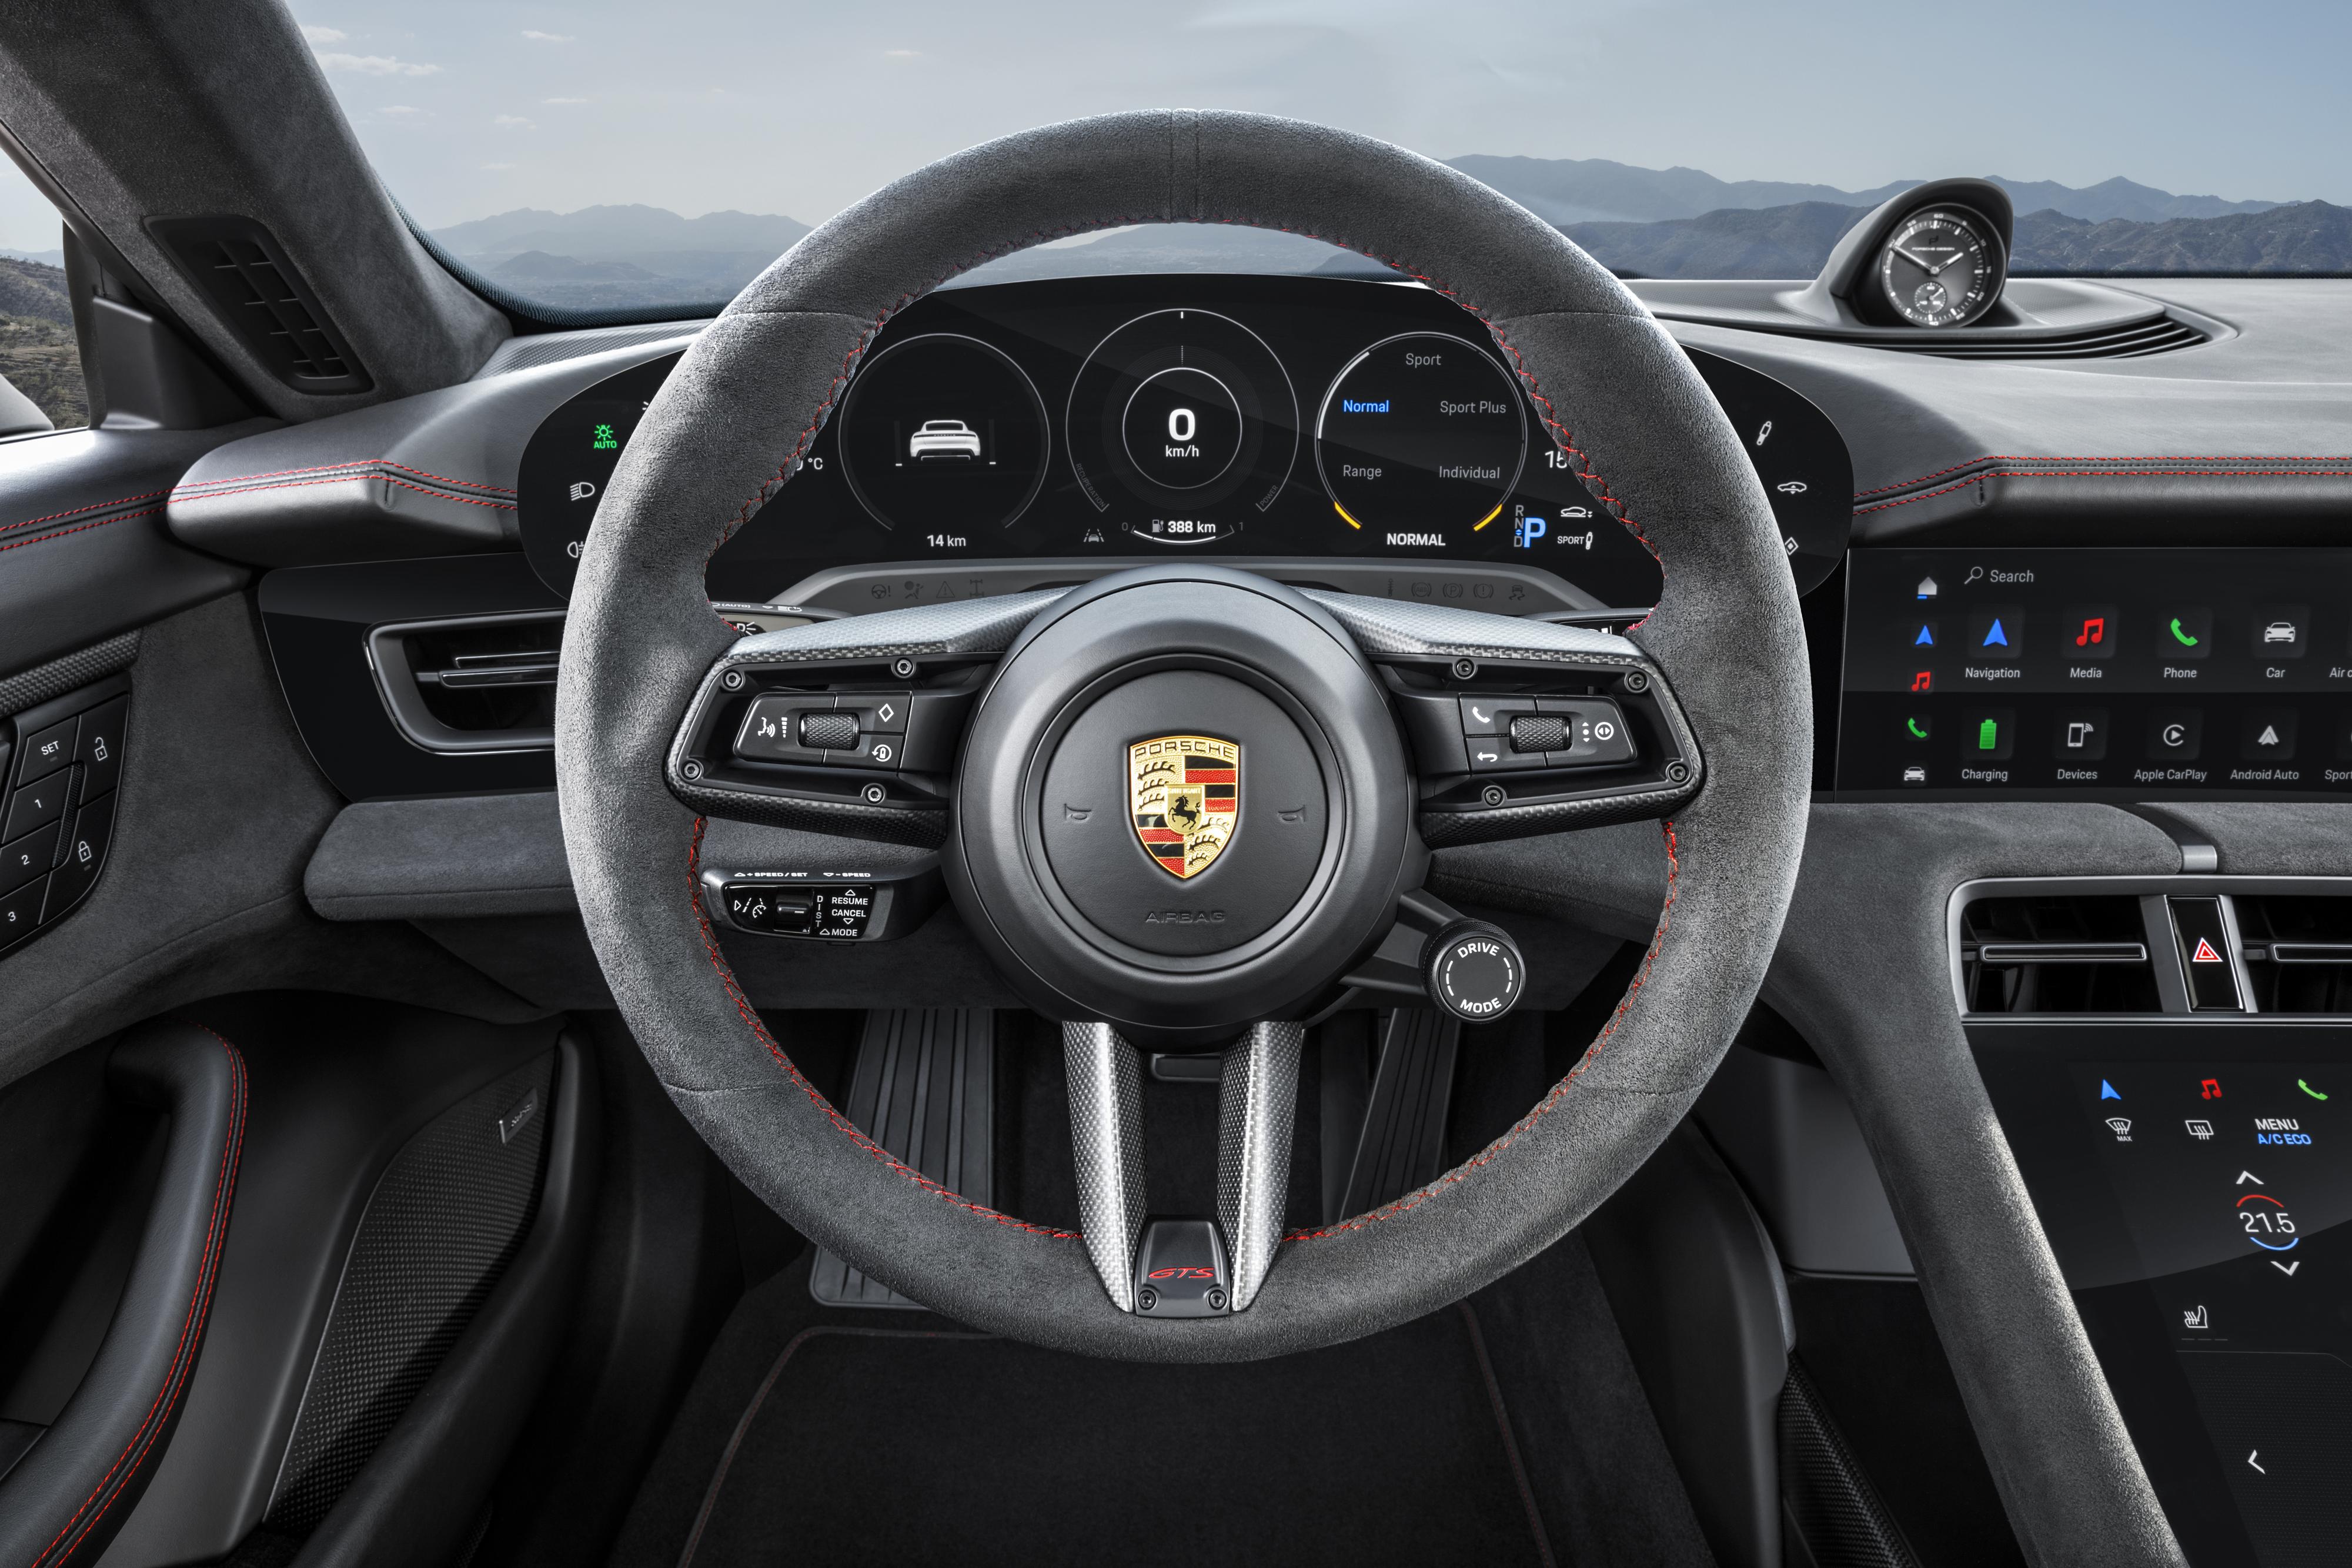 Fotos: Fotogalería: Así es el portentoso y electrizante nuevo Porsche Taycan GTS